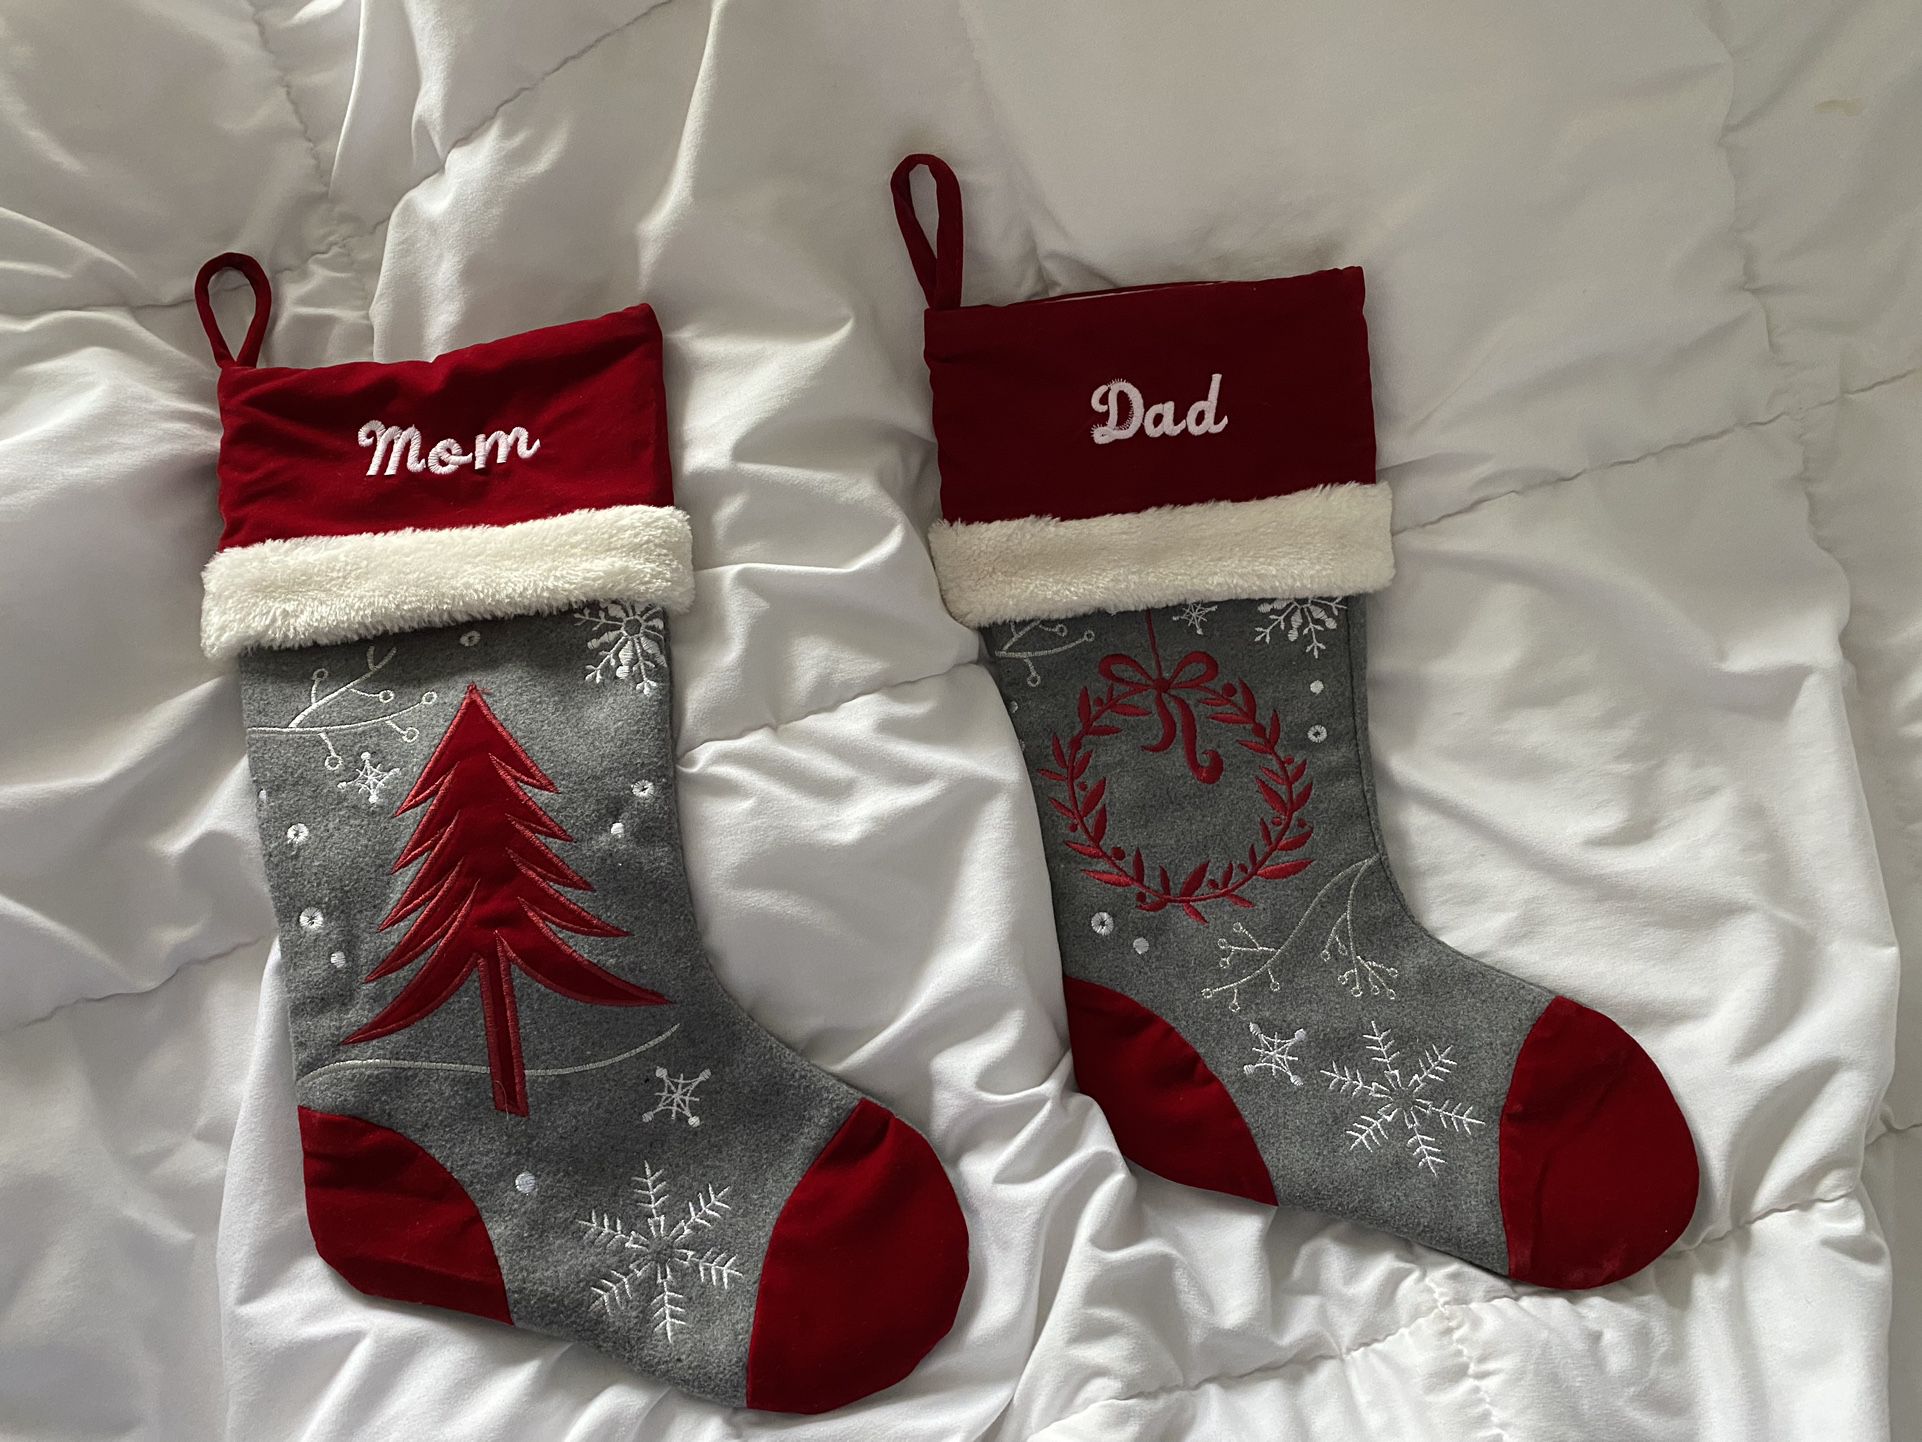 New Pair of Mom & Dad Christmas Stockings $12